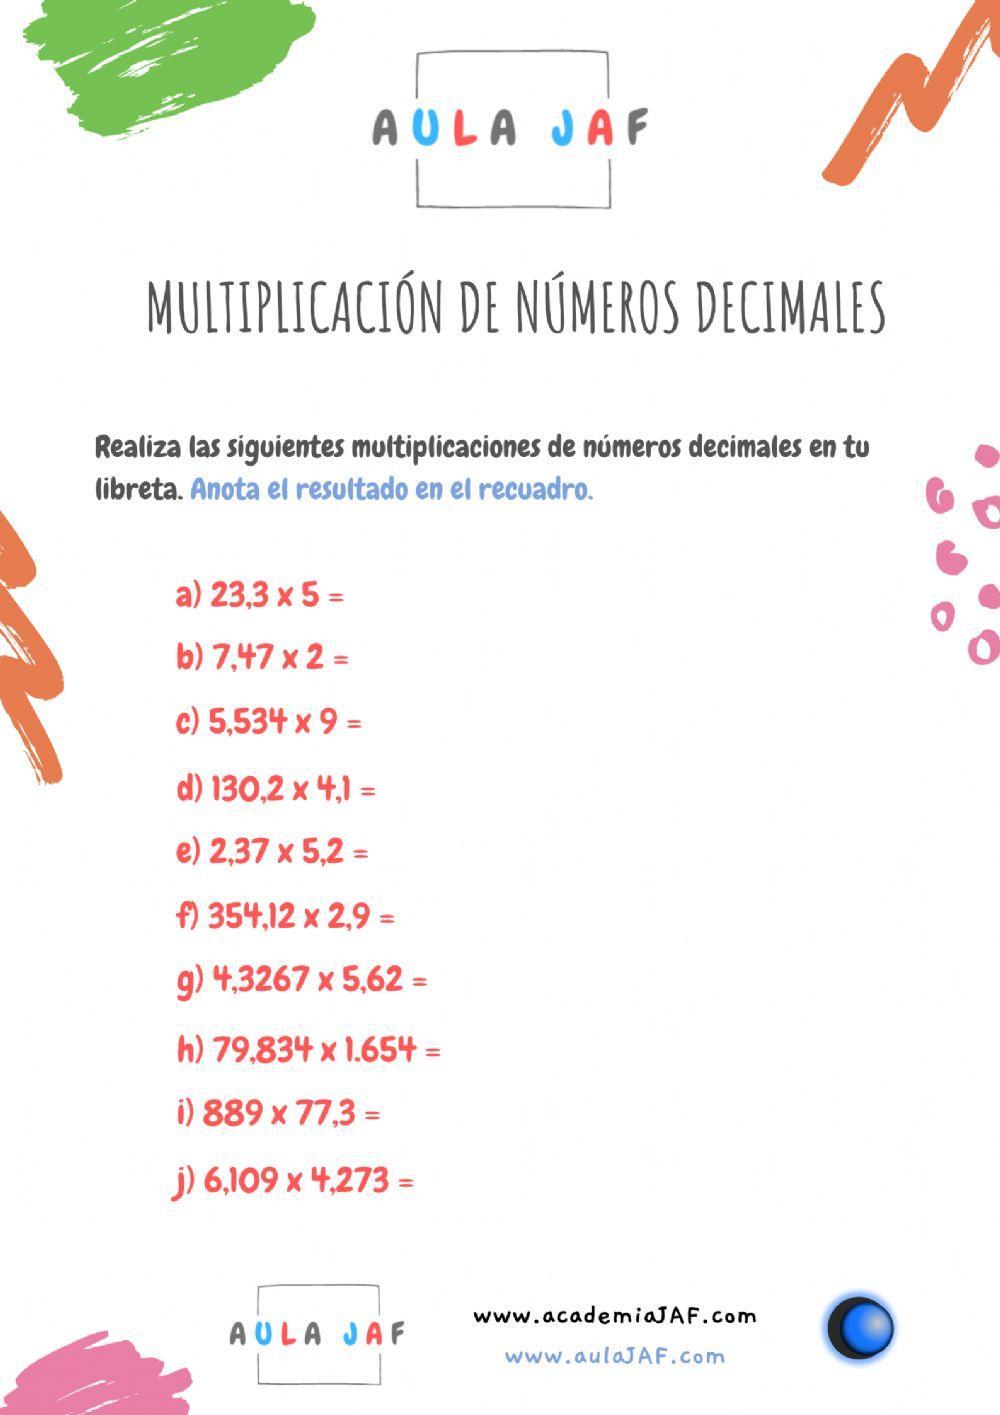 Multiplicación de números decimales - Multiplicar decimales